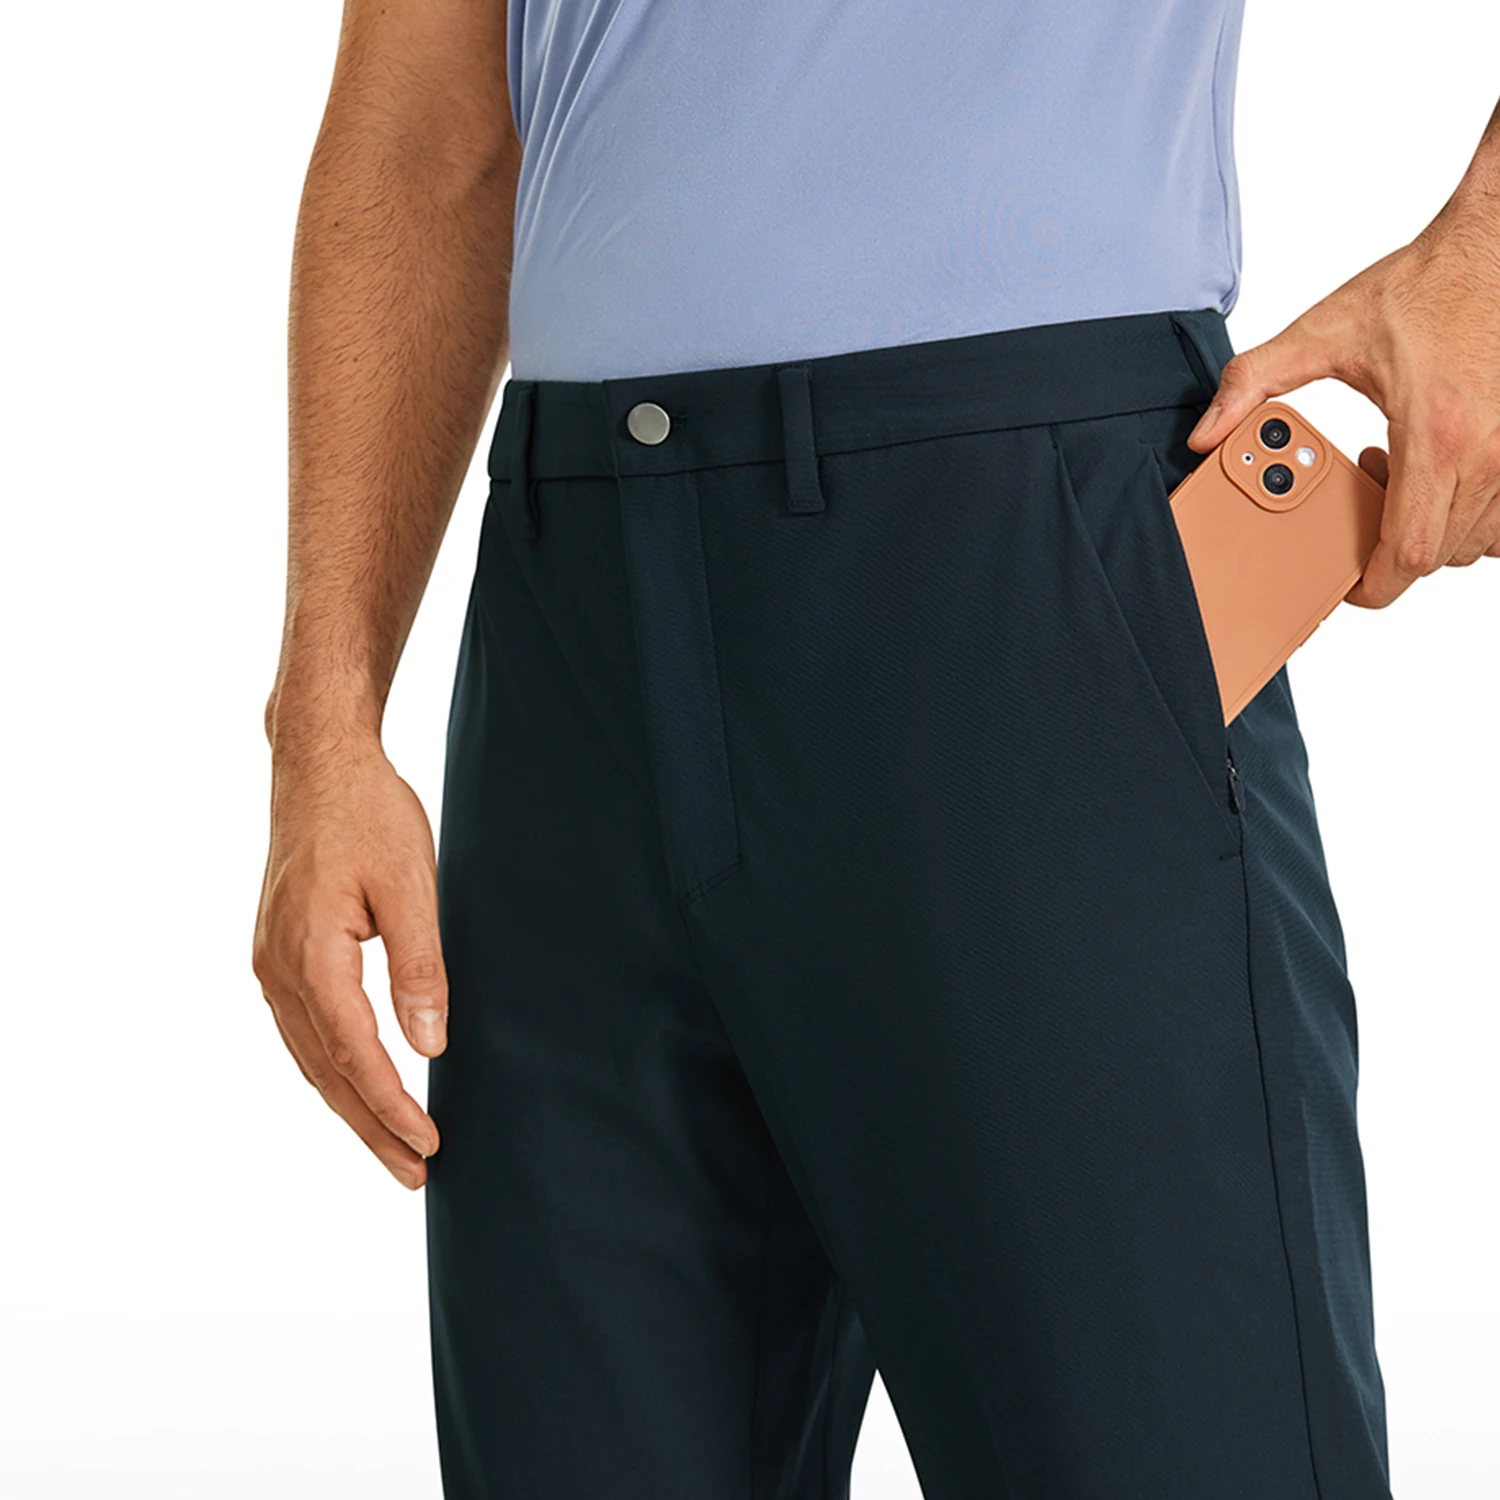 CRZ YOGA męskie całodniowe komfortowe spodnie do golfa-34 